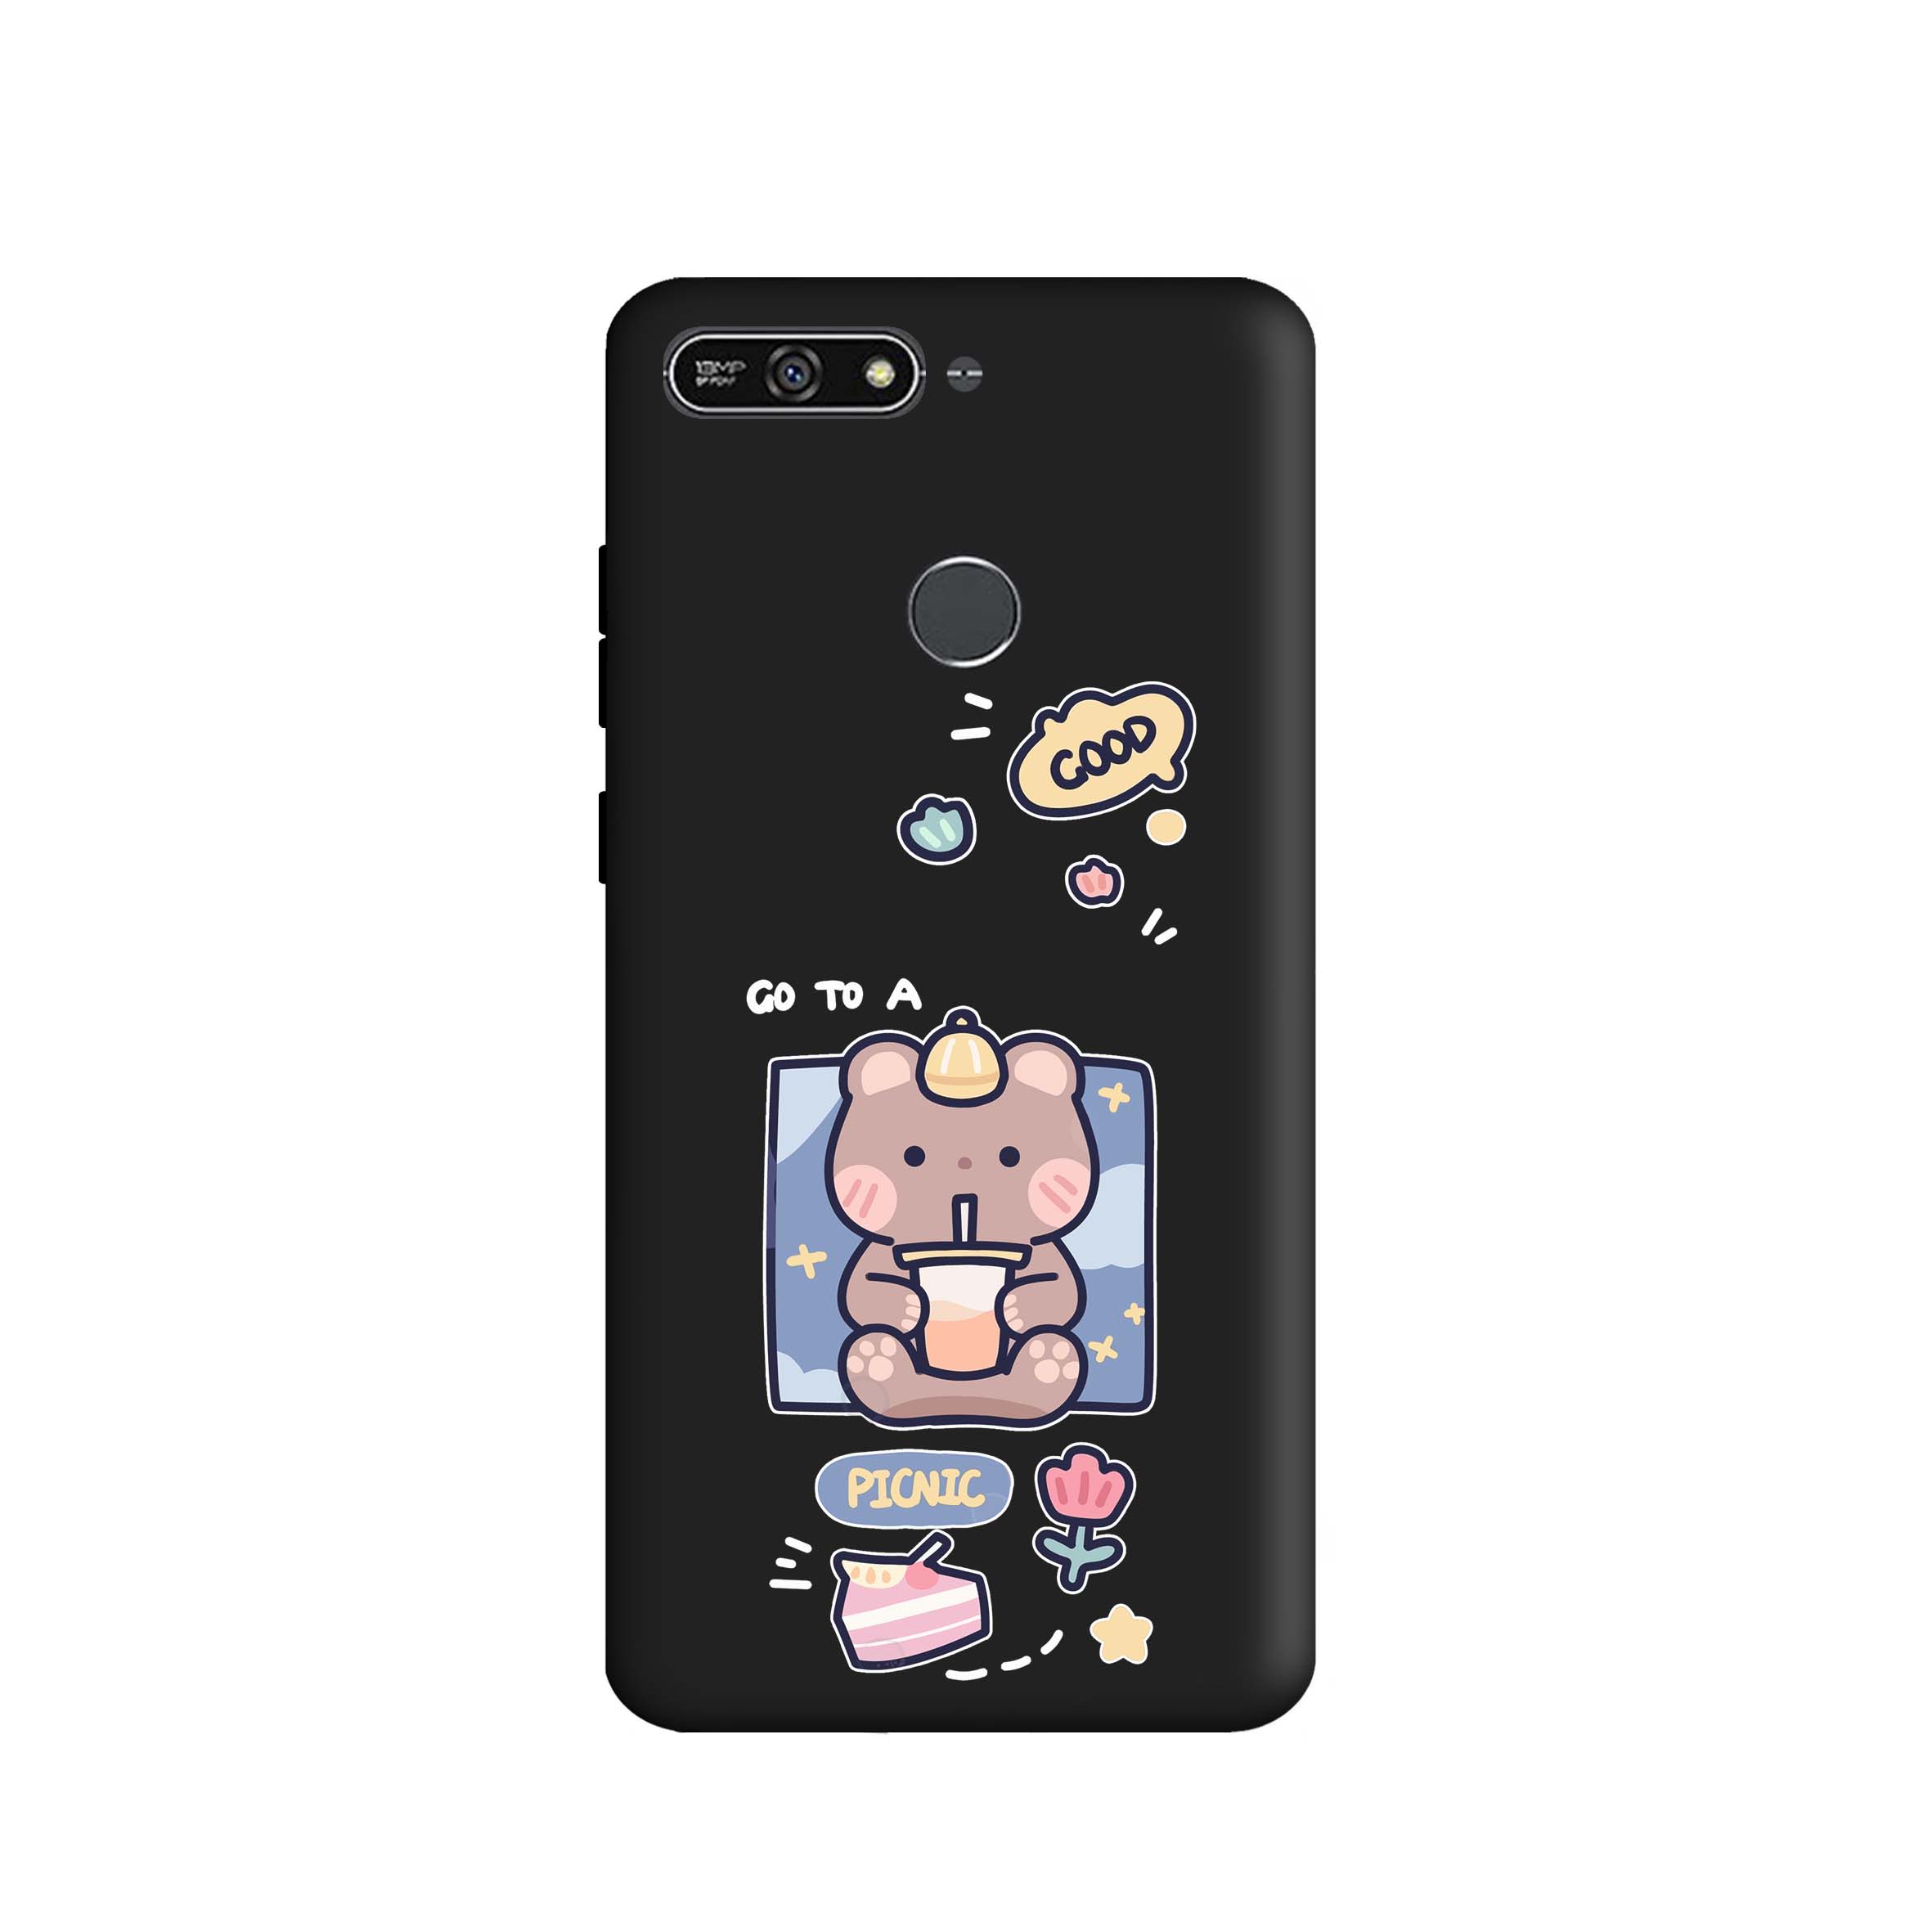 کاور طرح خرس شکمو کد m3970 مناسب برای گوشی موبایل هوآوی Y6 Prime 2018